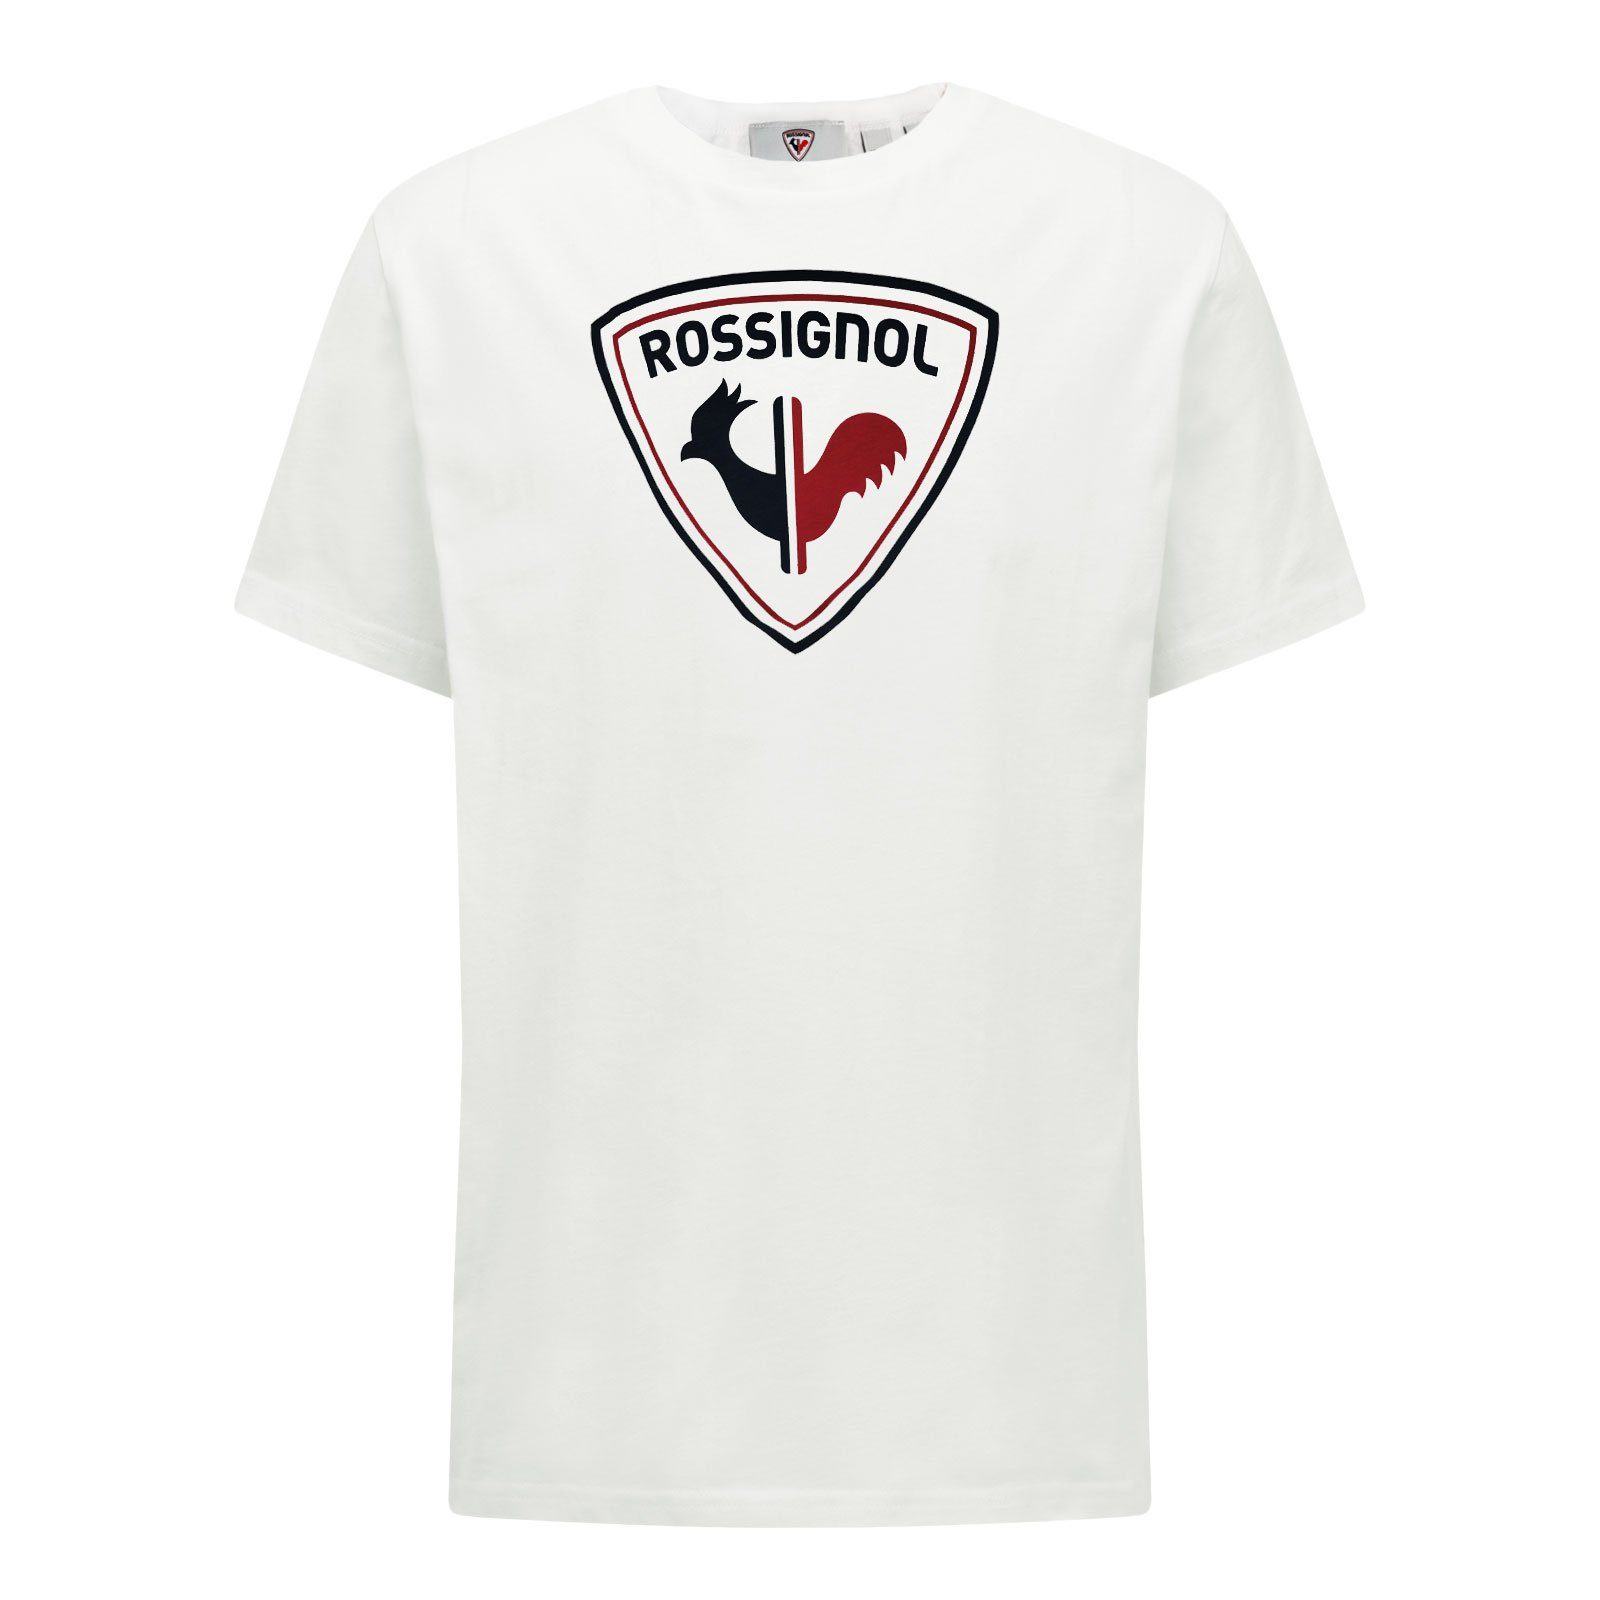 Logo Rossi Rossignol mit Tee white Hahn-Grafik markentypischer T-Shirt 100